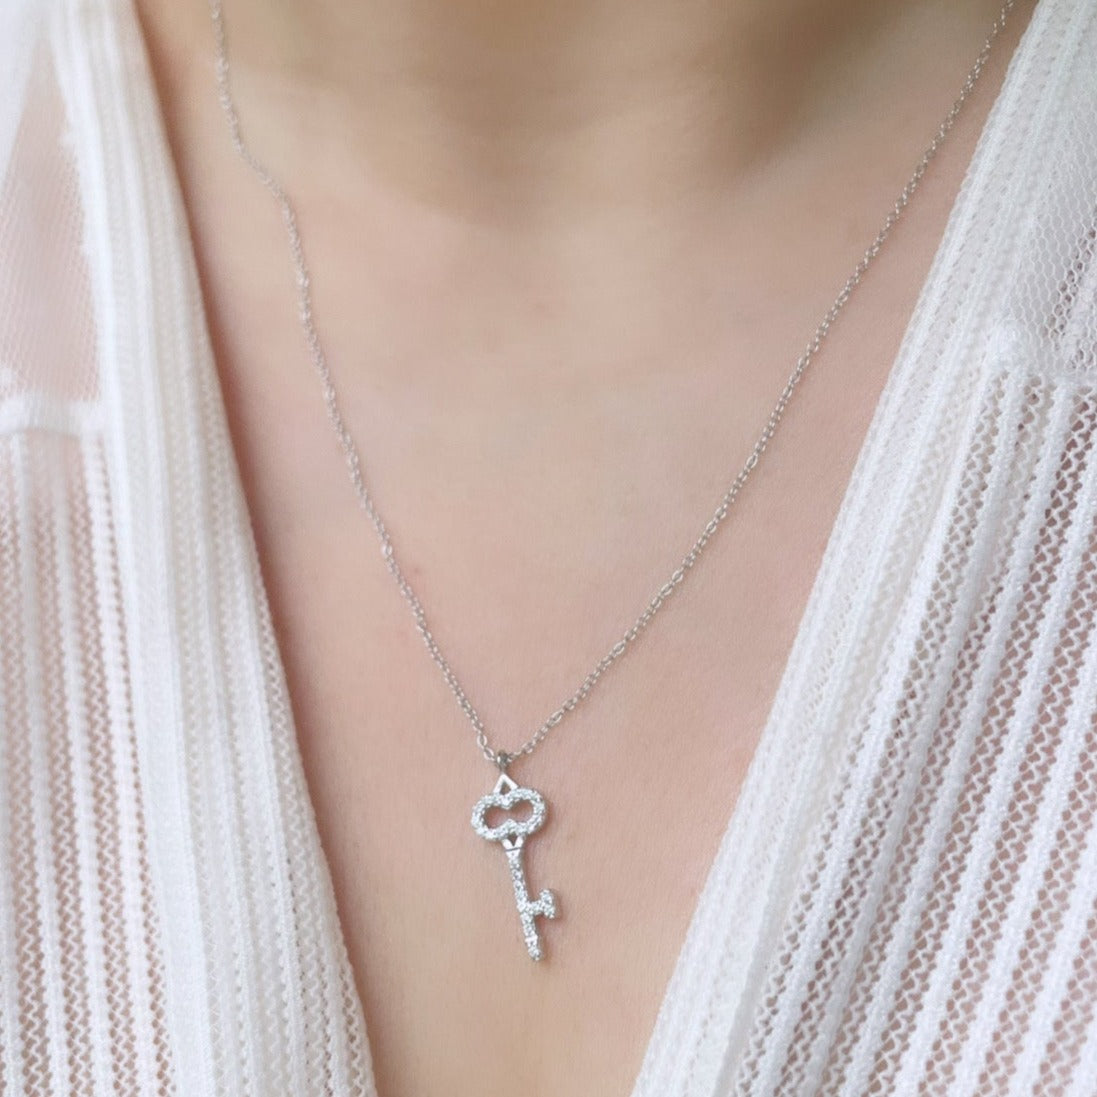 Jiannet Silver Key Necklace